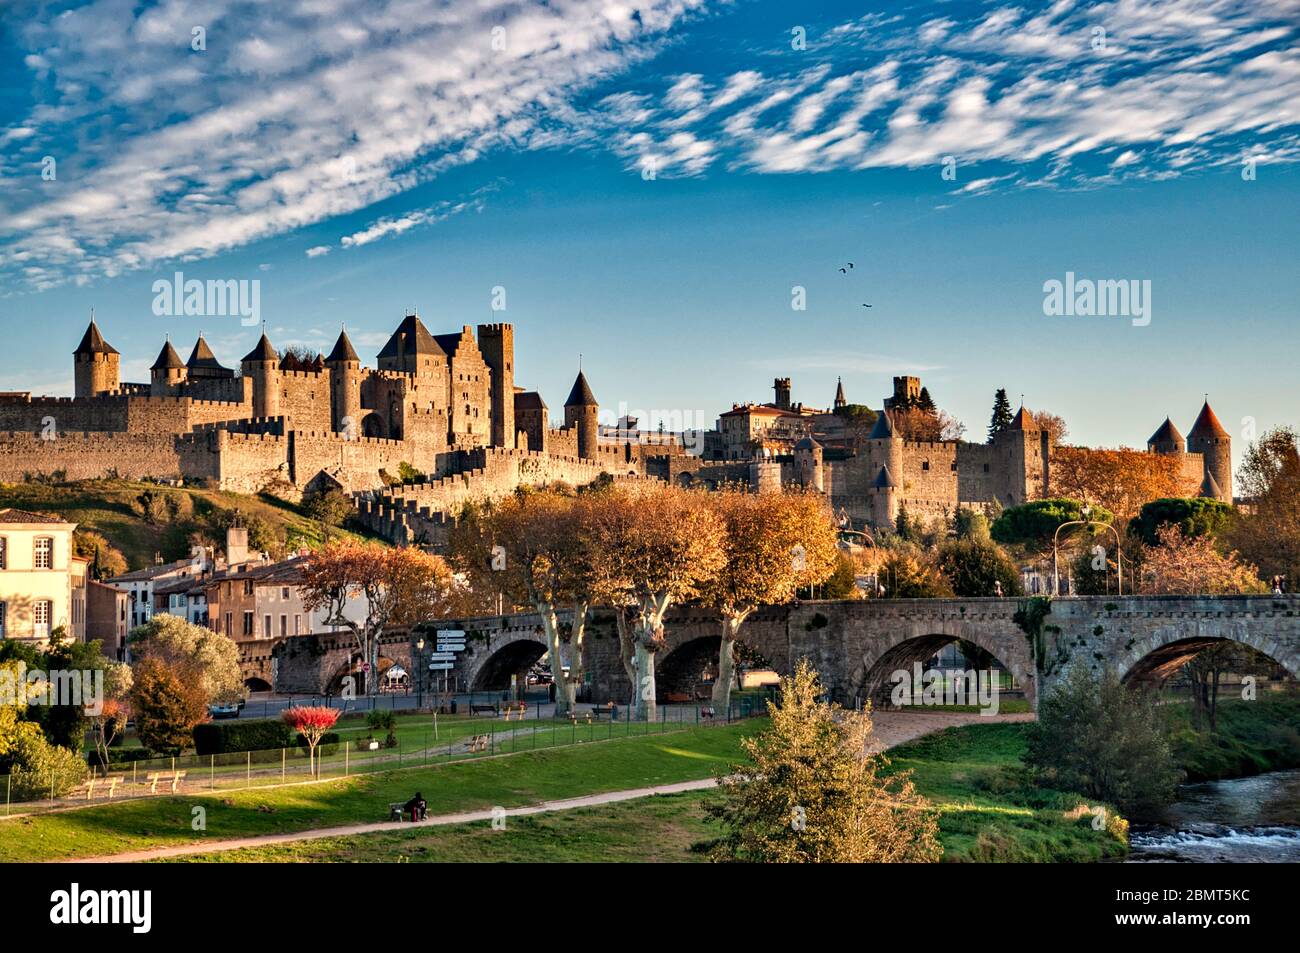 View of the Cite de Carcassonne, Aude, Languedoc-Rousillon, France Stock Photo